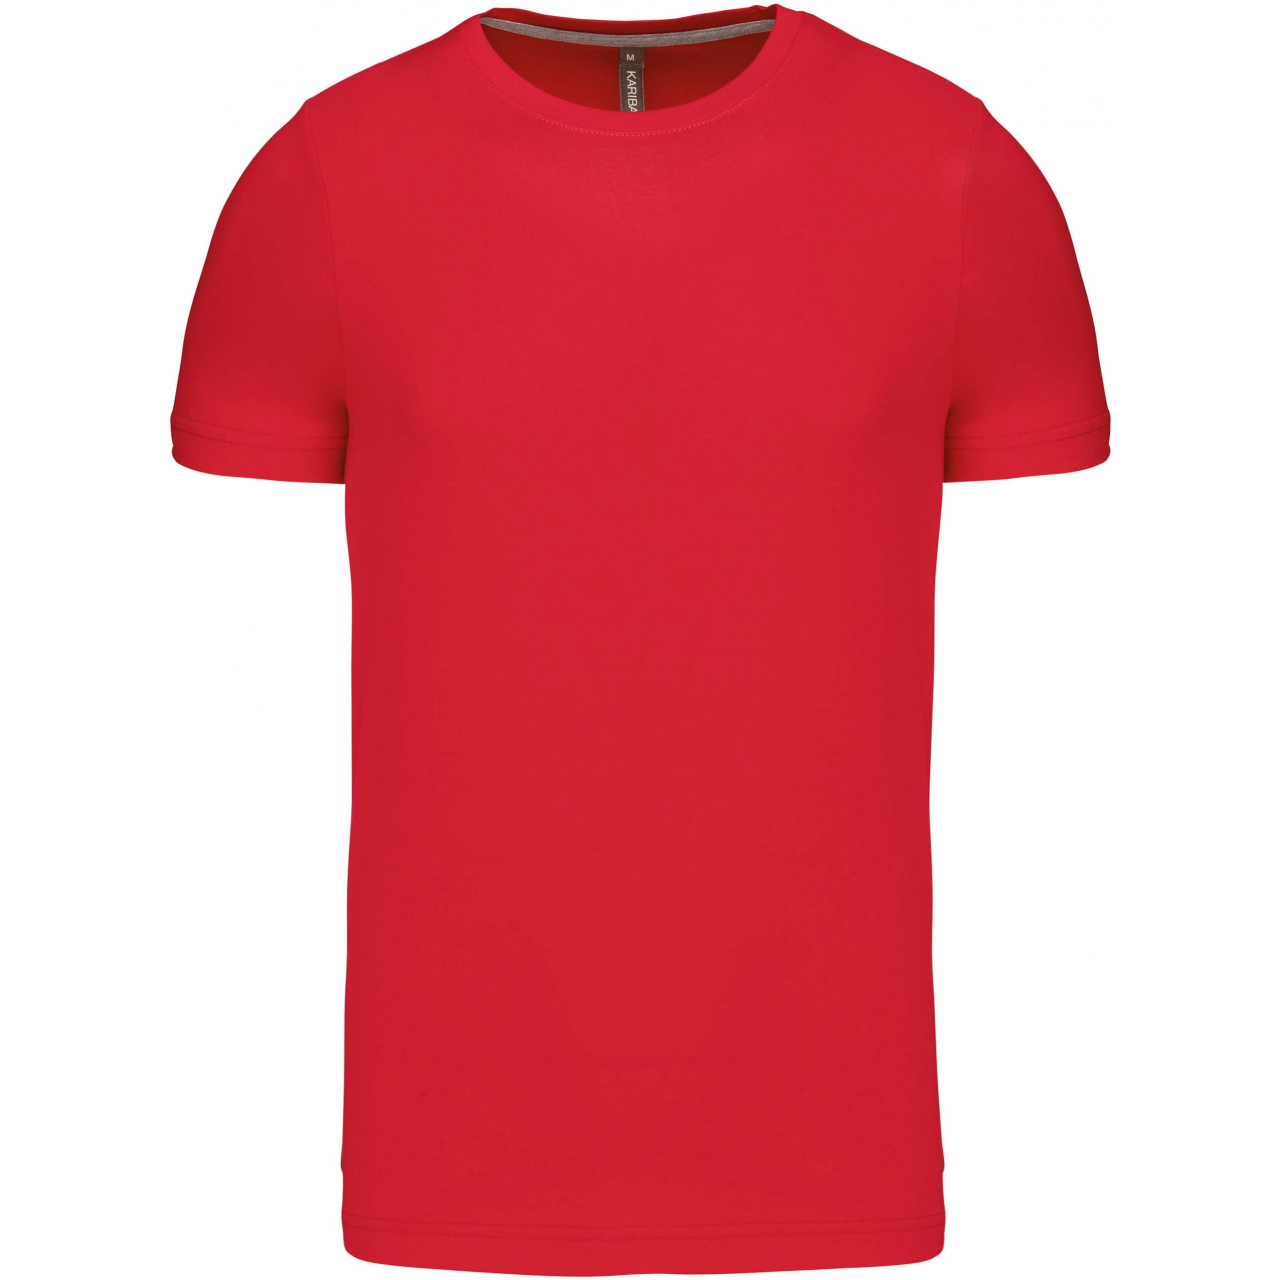 Pánské tričko Kariban krátký rukáv - červené, XXL